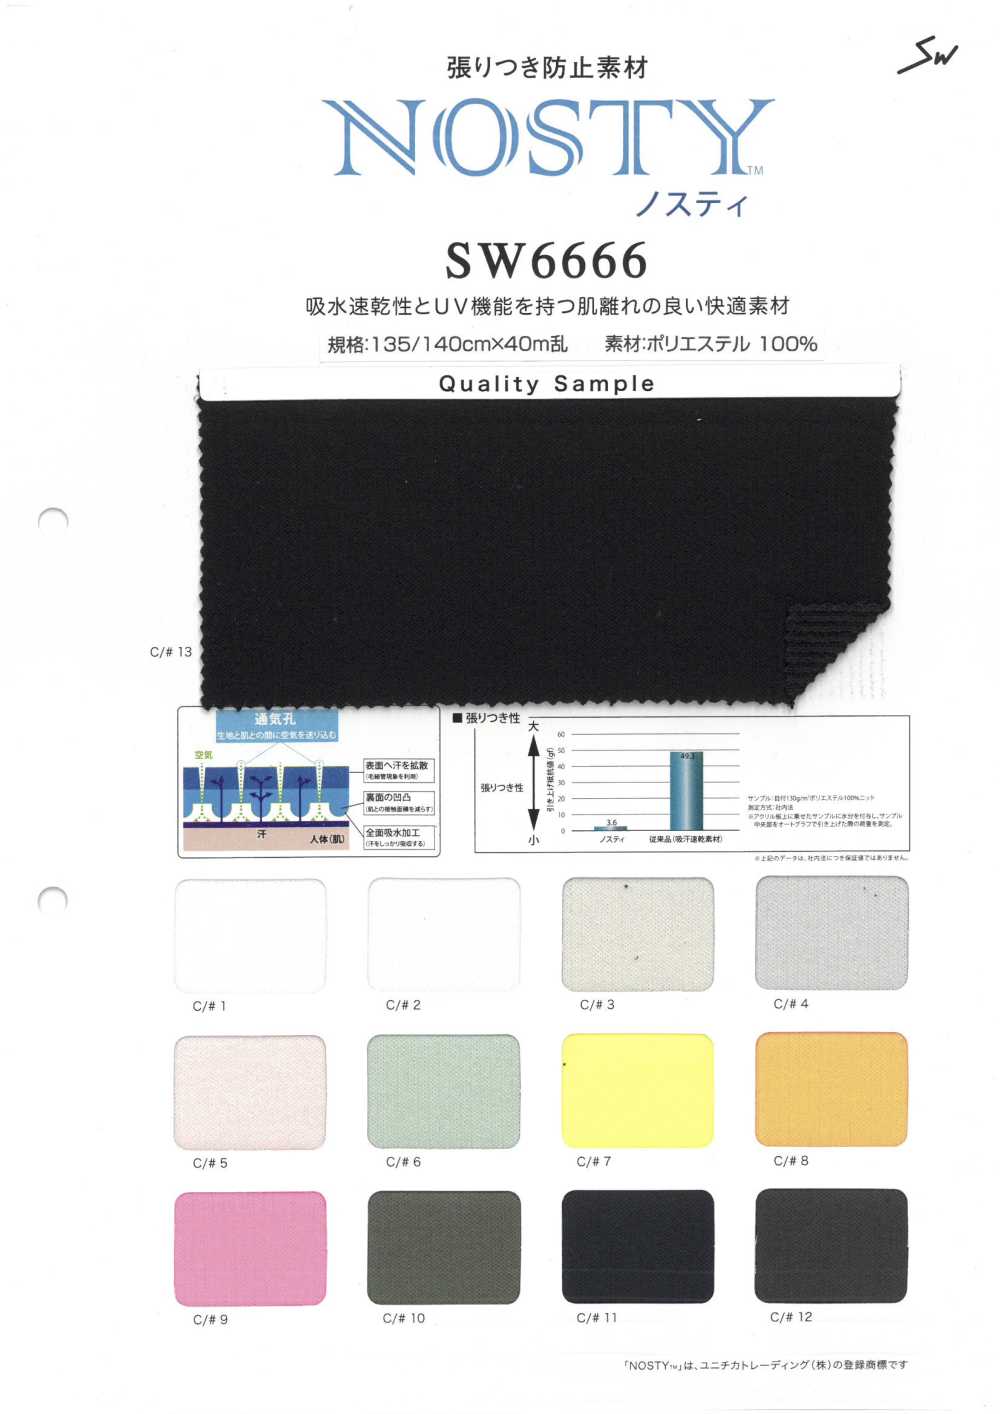 SW6666 Nosty[Têxtil / Tecido] Fibras Sanwa